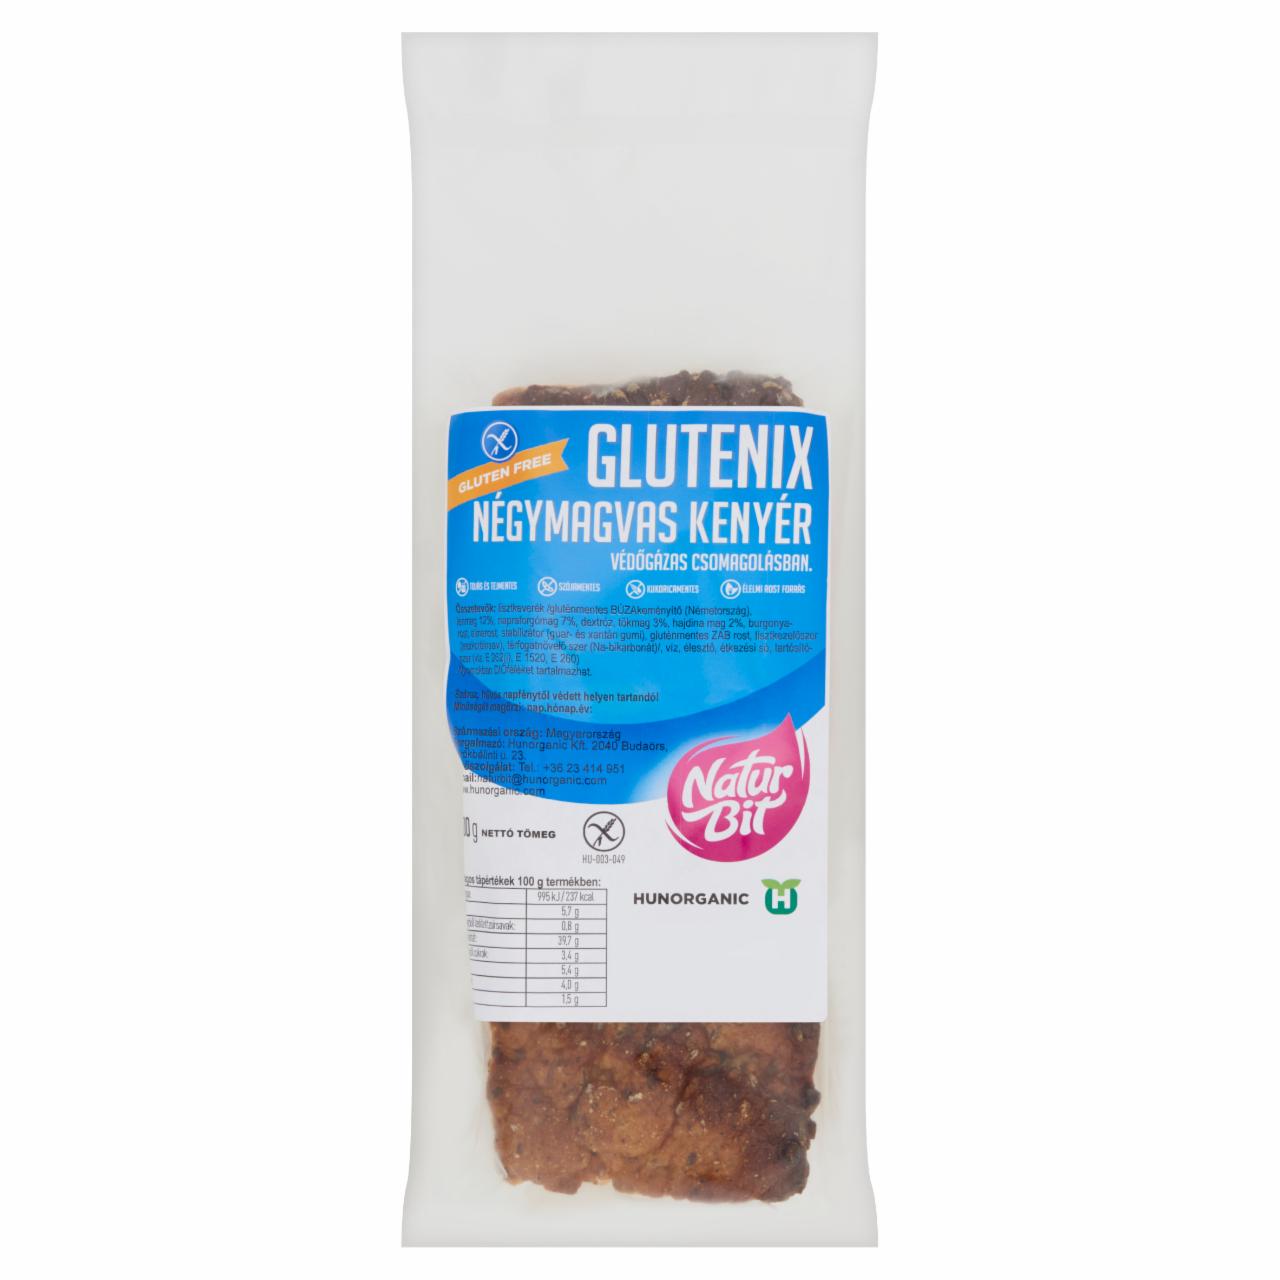 Képek - Naturbit Glutenix négymagvas kenyér 400 g